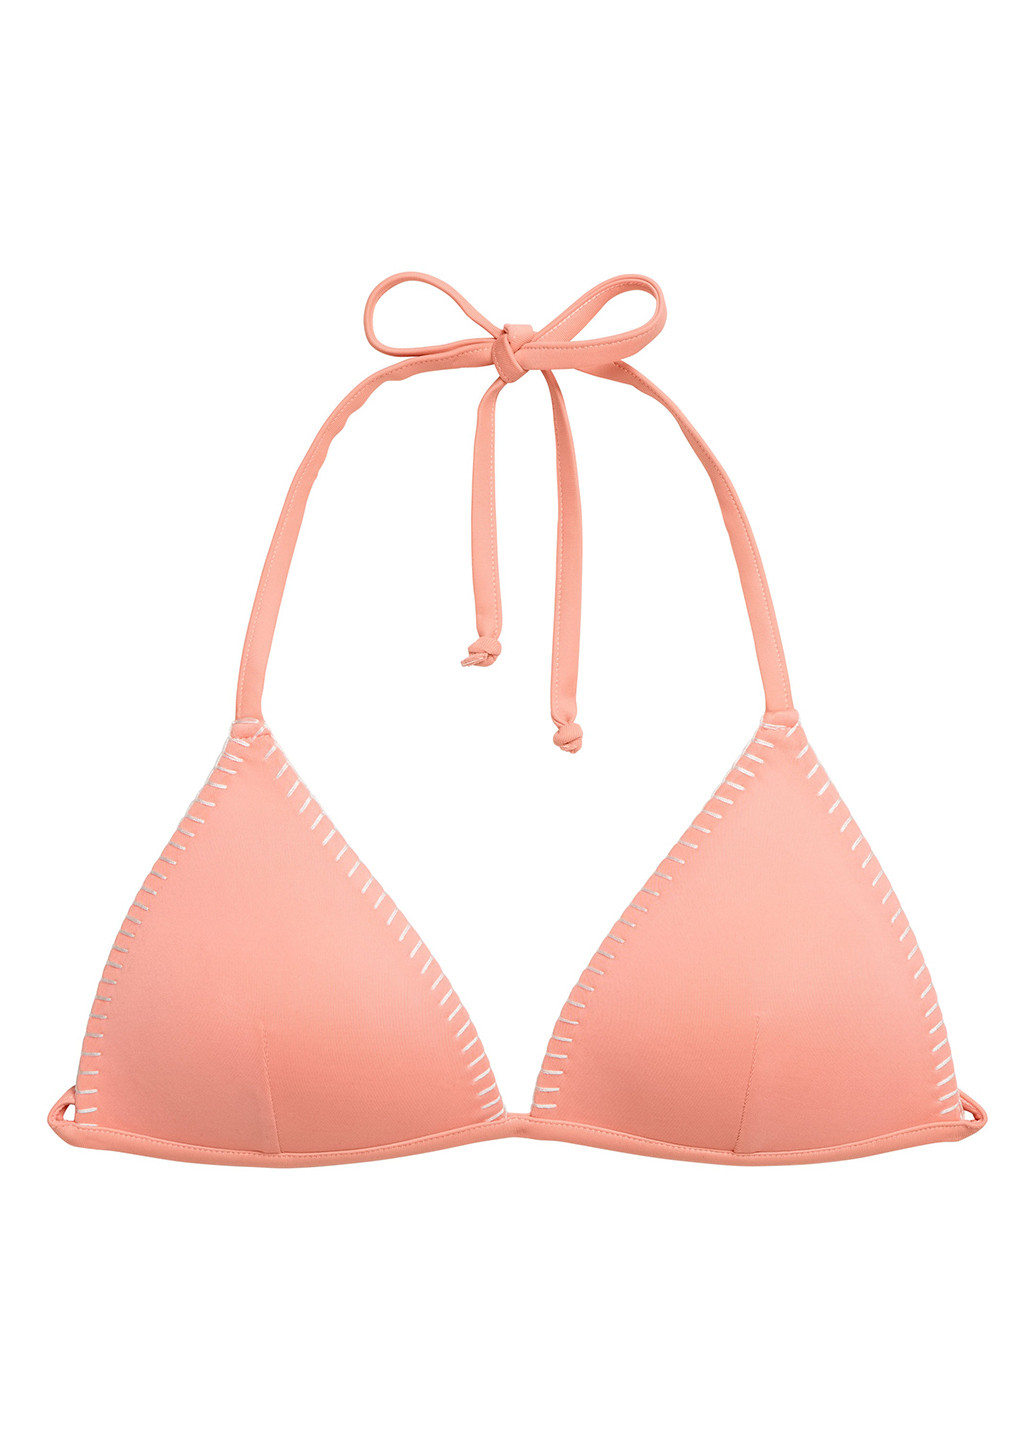 Купальный лиф H&M бикини однотонный персиковый пляжный полиэстер, трикотаж